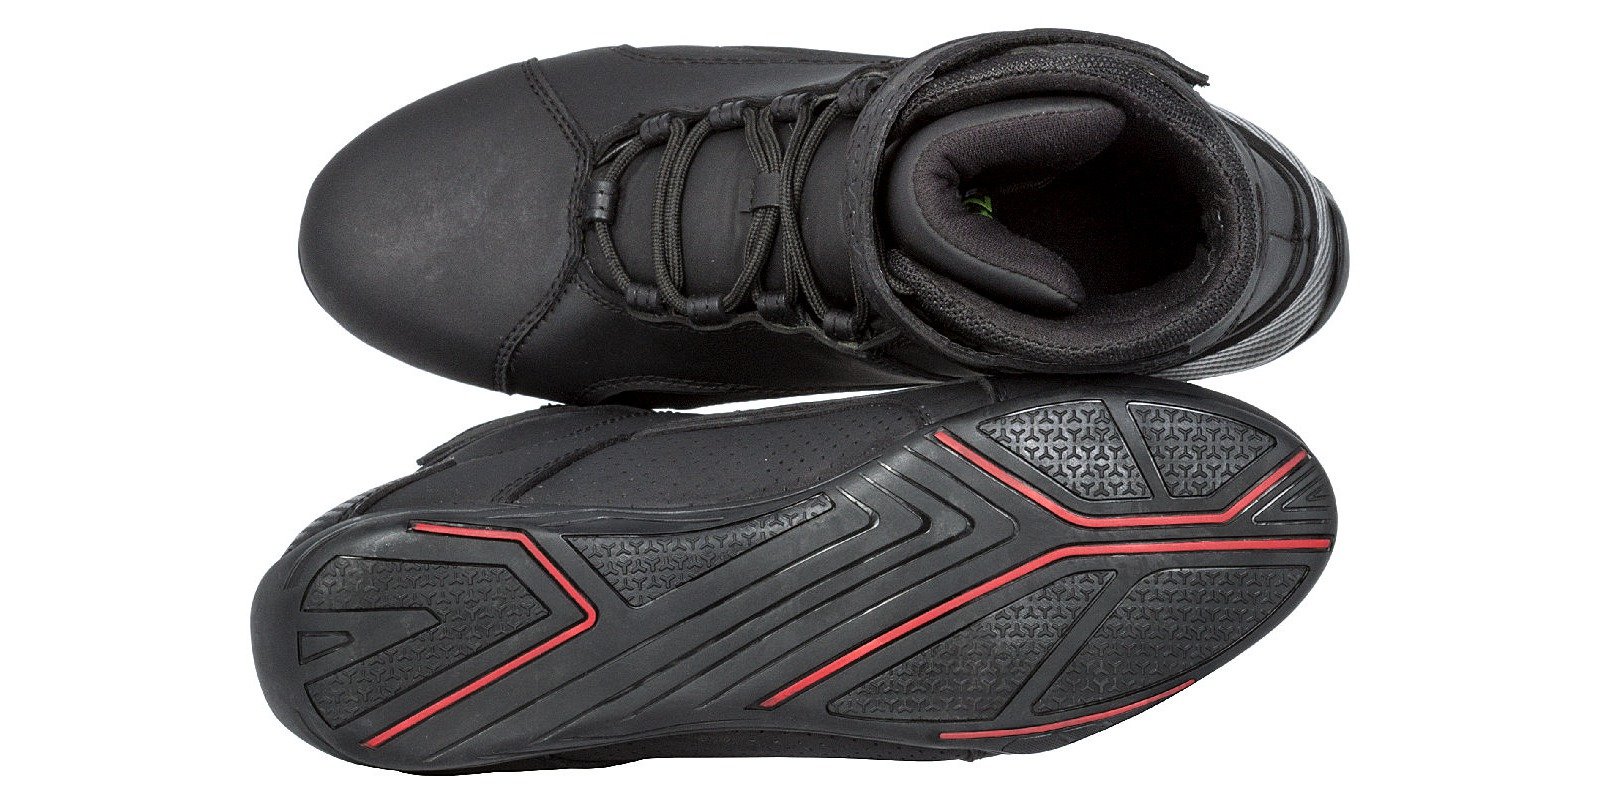 Obrázek produktu boty Velcro 2.0, KORE (černé)